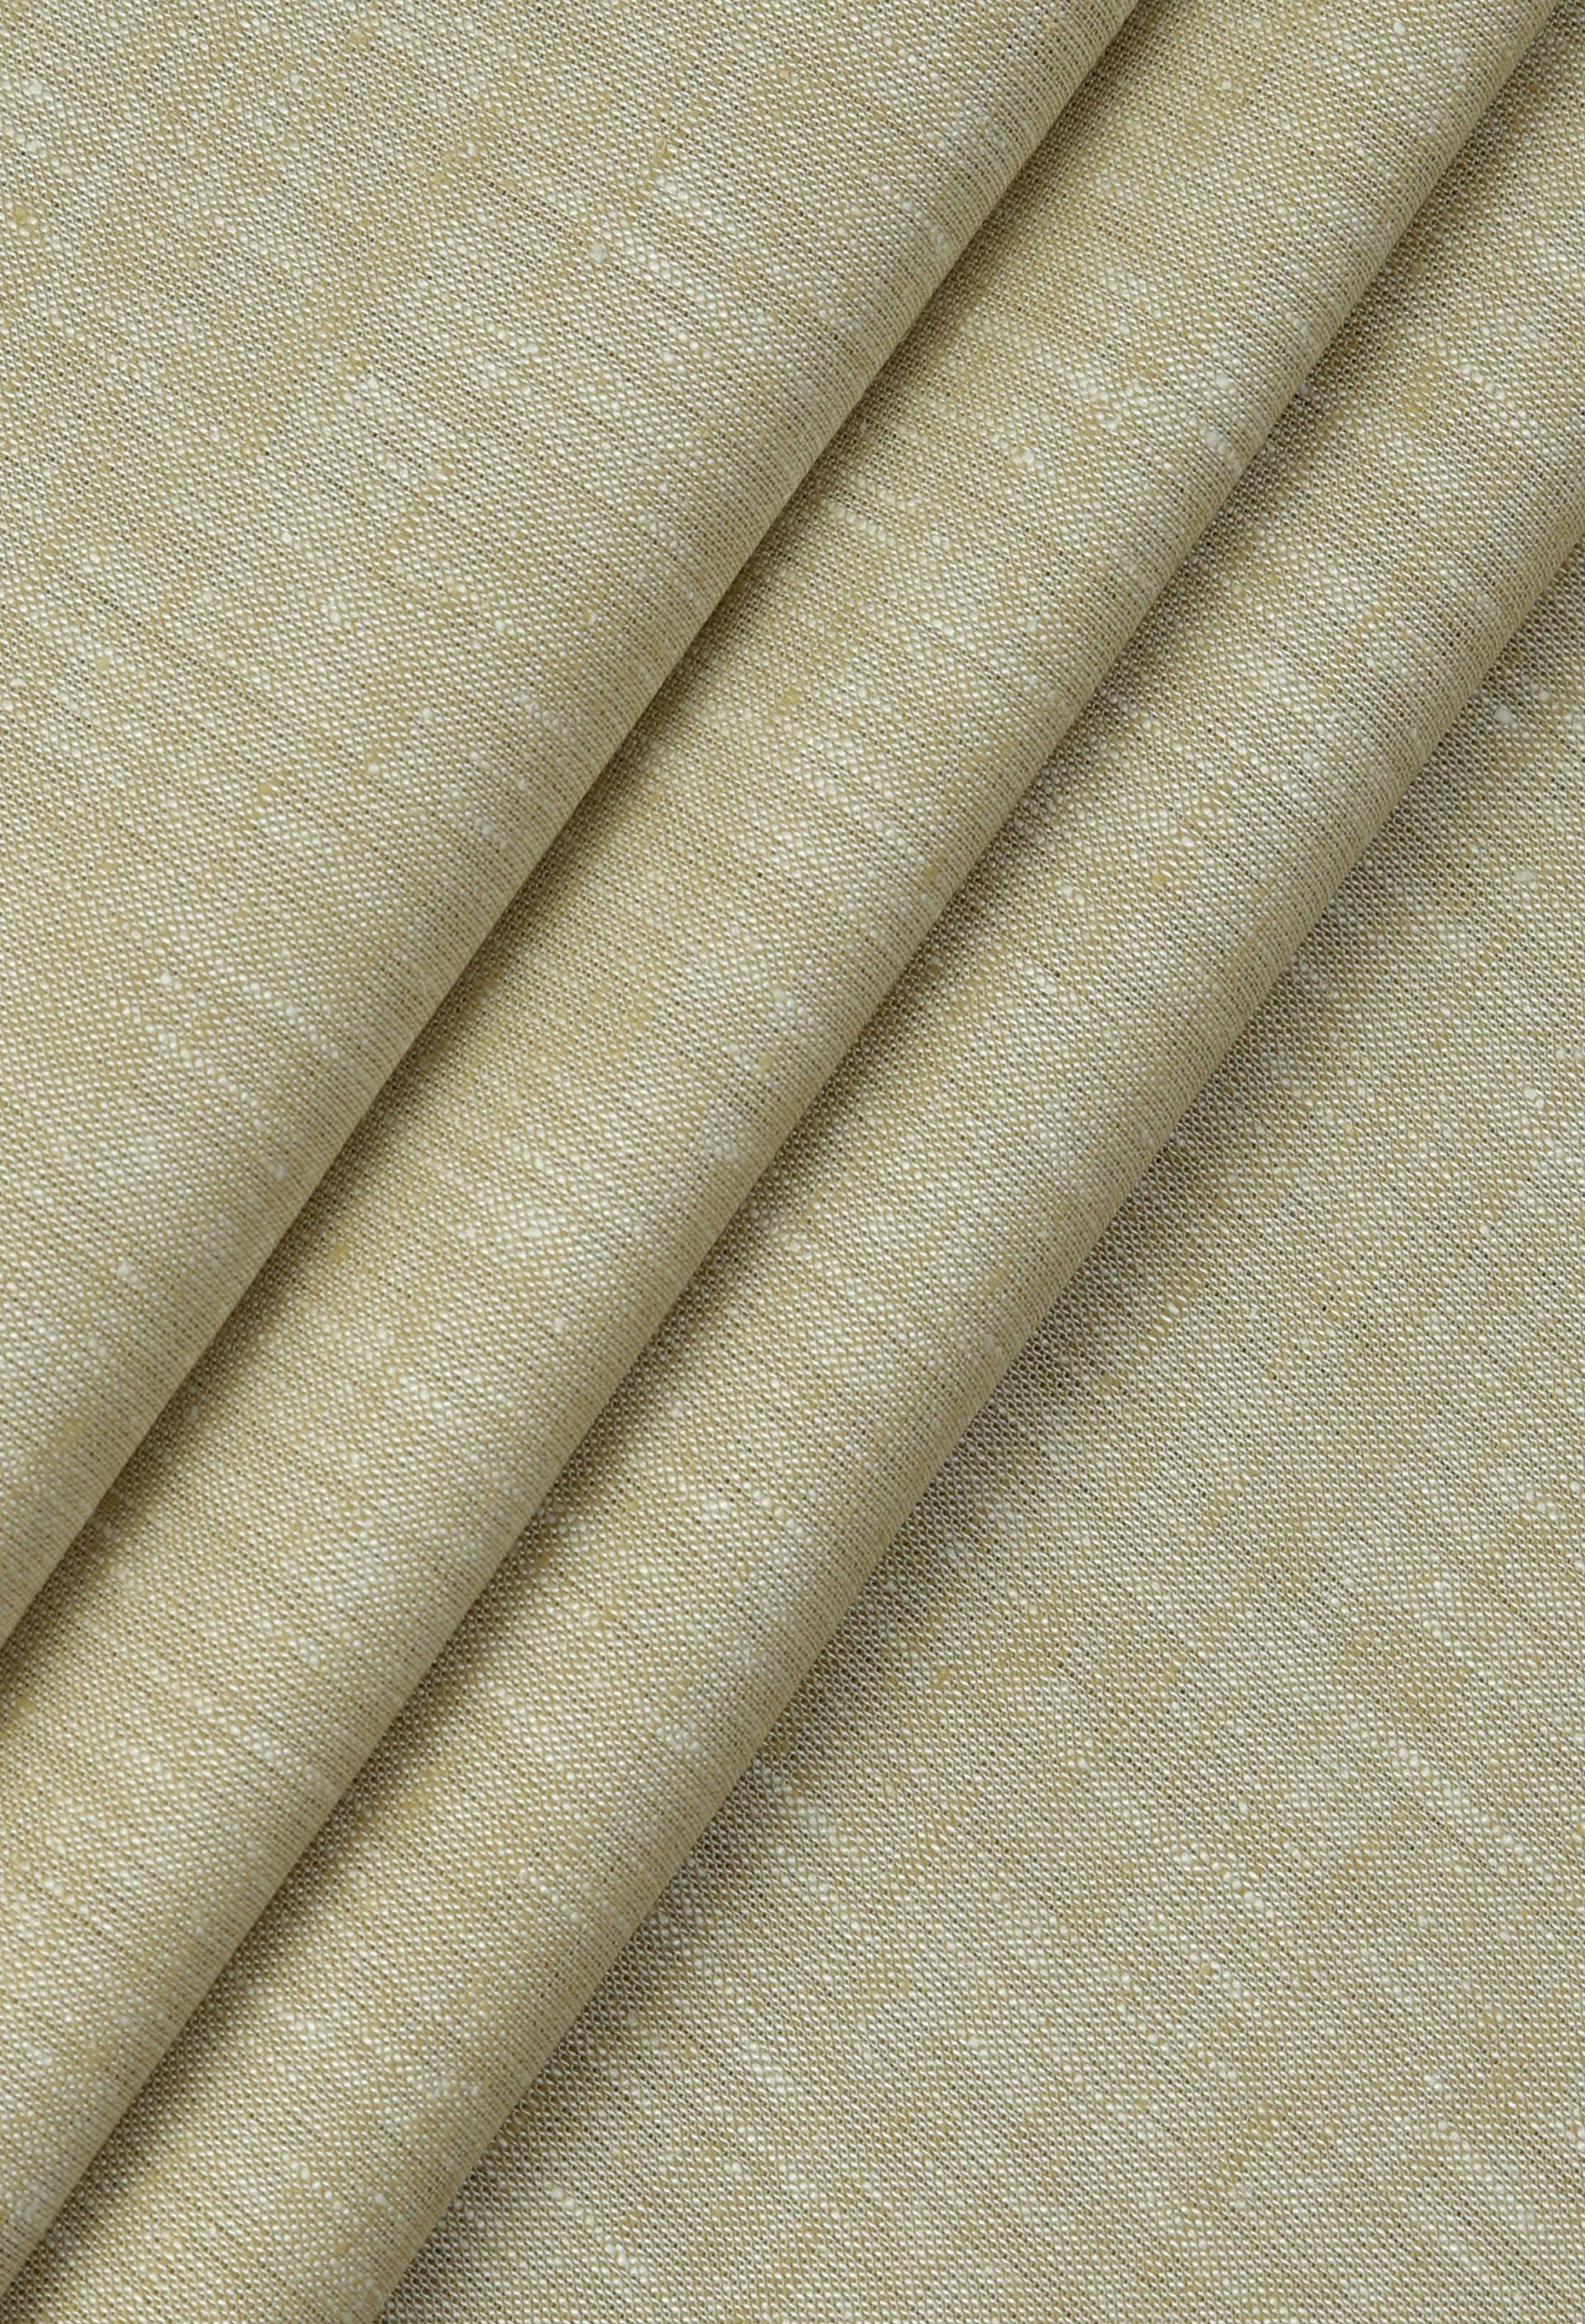 Sand Castle Brown Linen